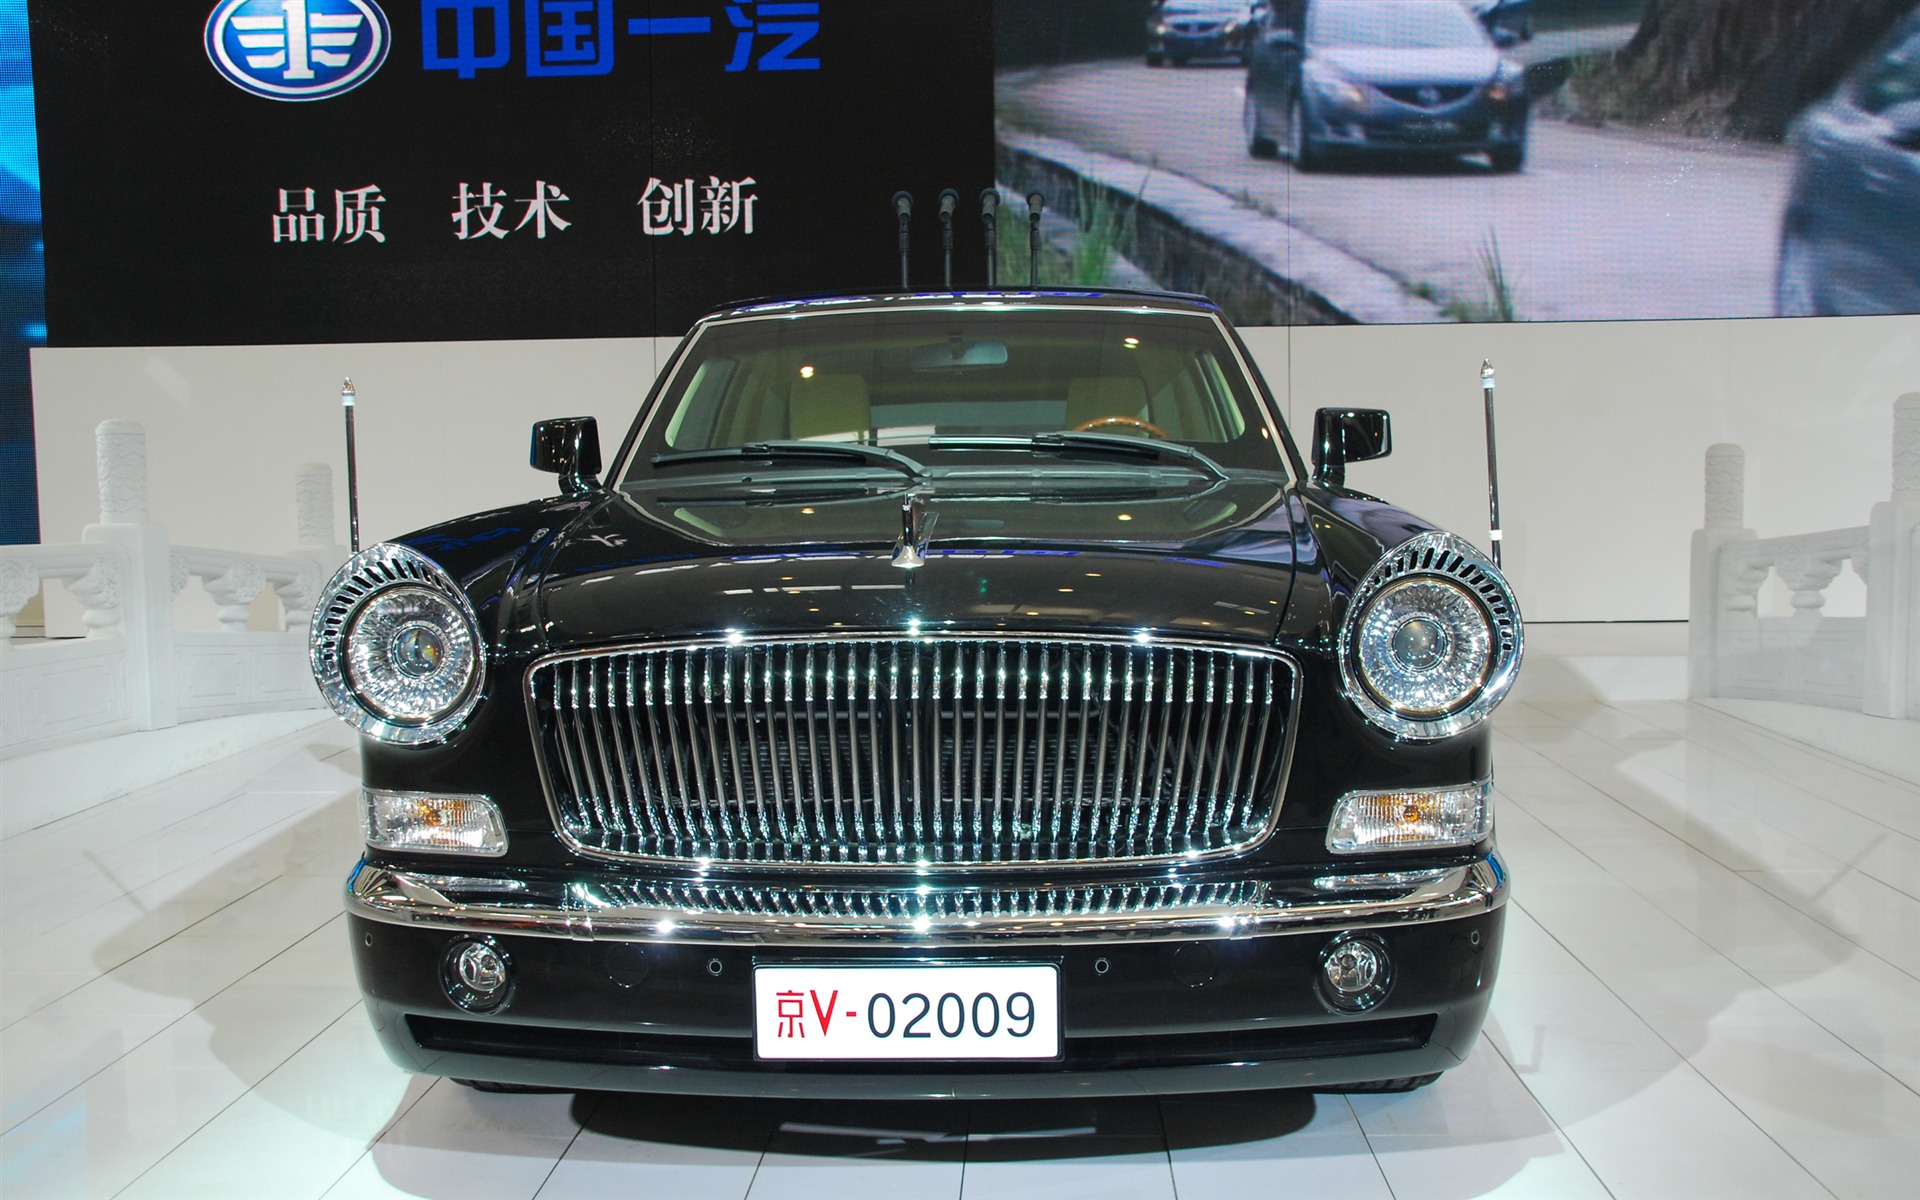 2010北京国际车展(一) (z321x123作品)2 - 1920x1200